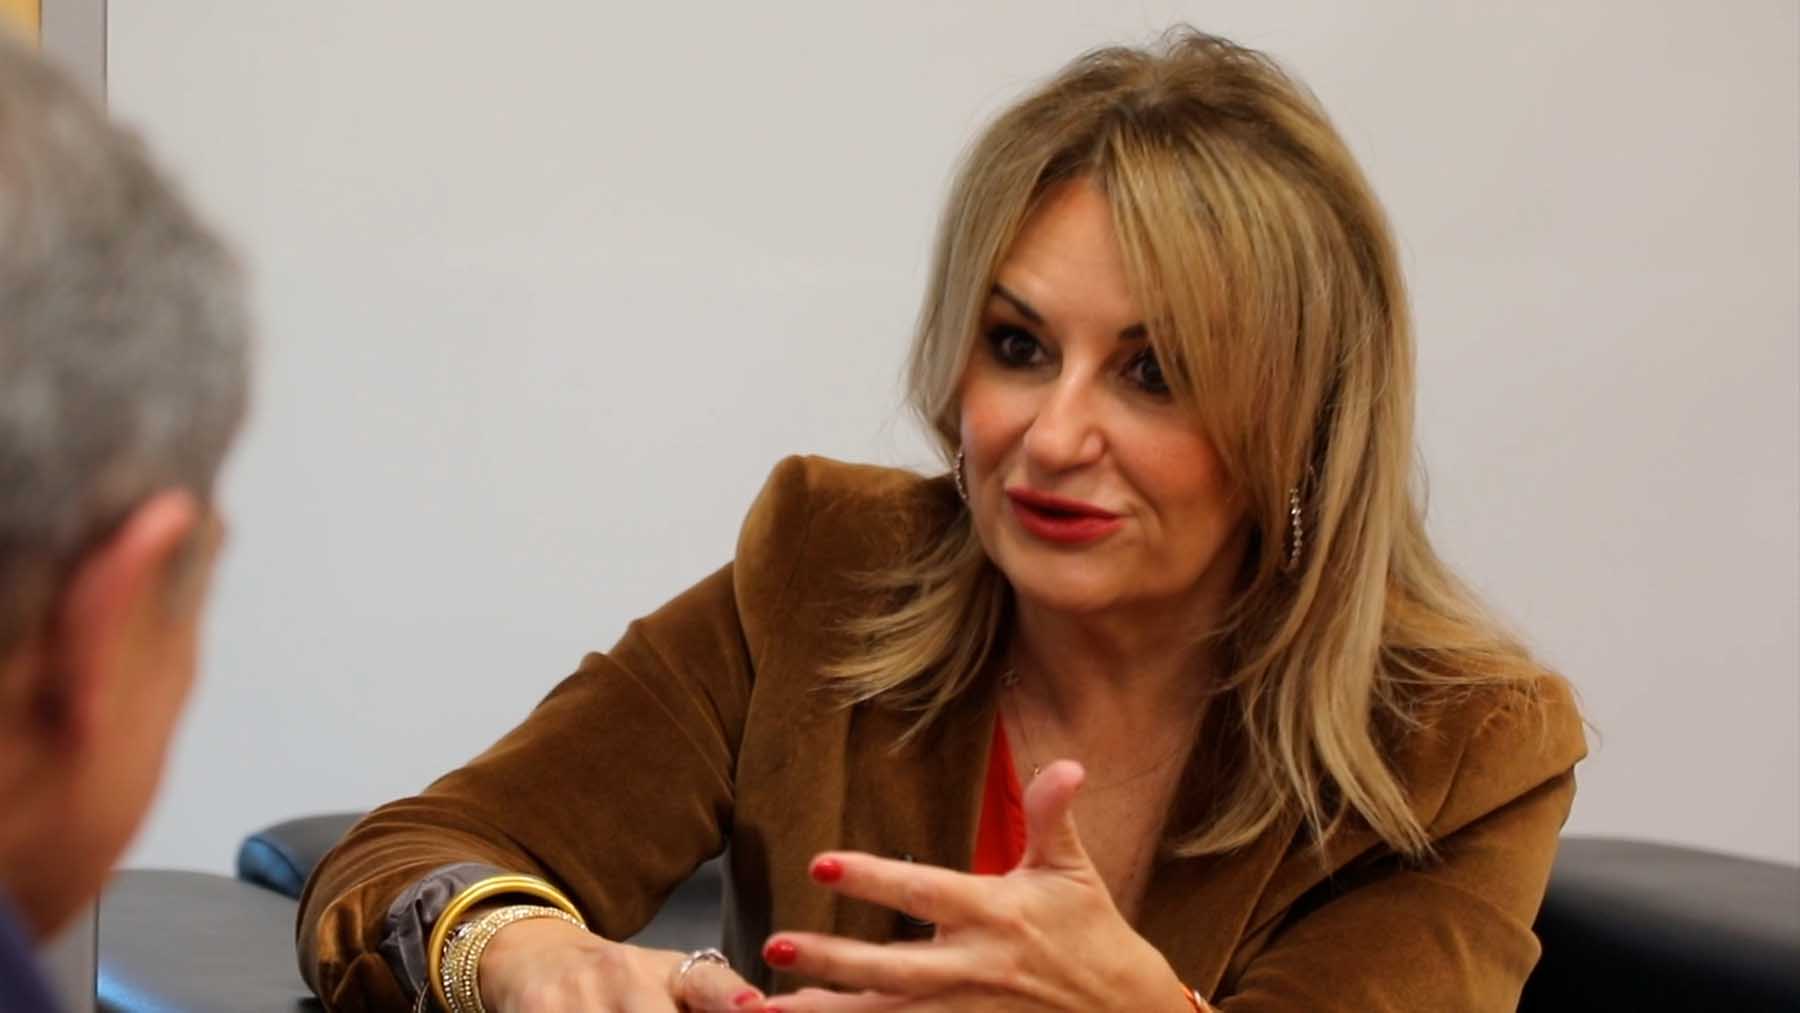 La consejera de Turismo de la Generalitat Valenciana, Nuria Montes, durante la entrevista con OKDIARIO.